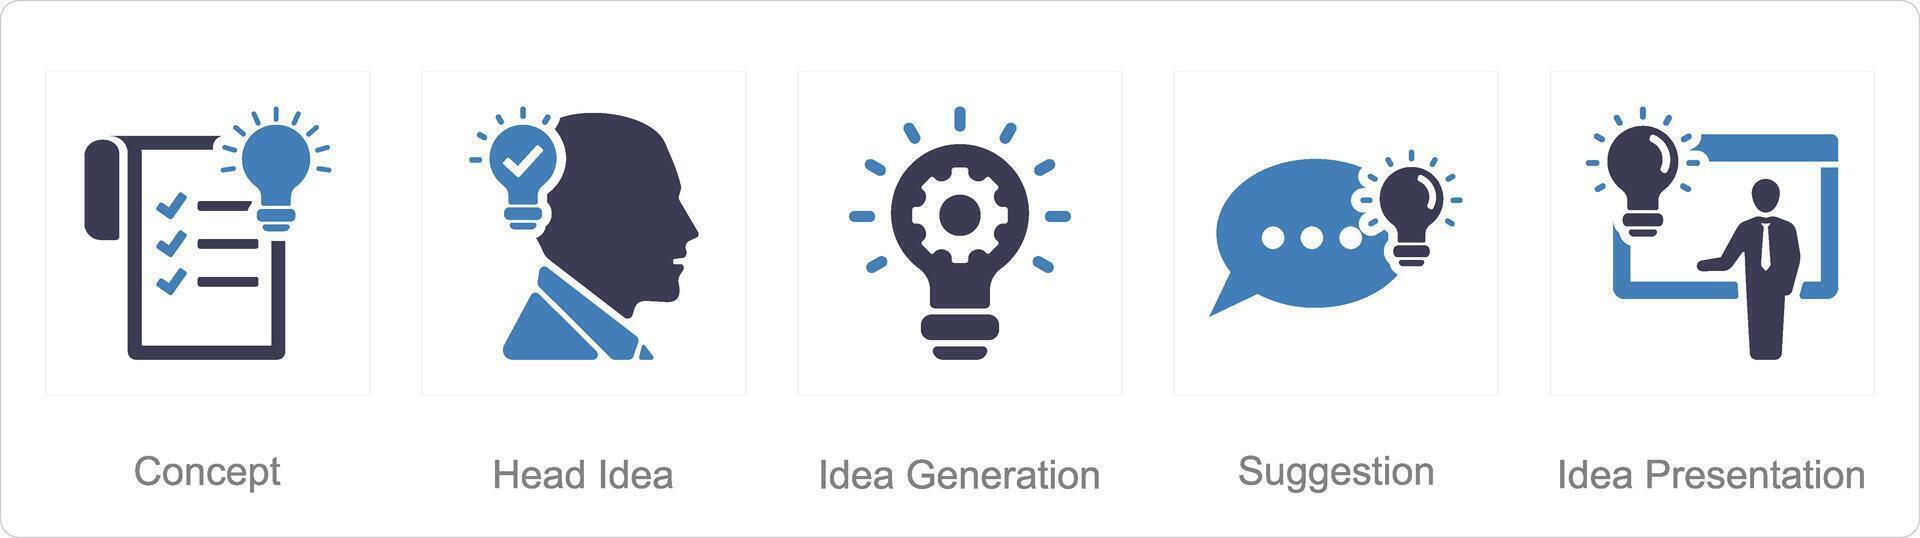 ein einstellen von 5 Idee Symbole wie Konzept, Kopf Idee, Idee Generation vektor